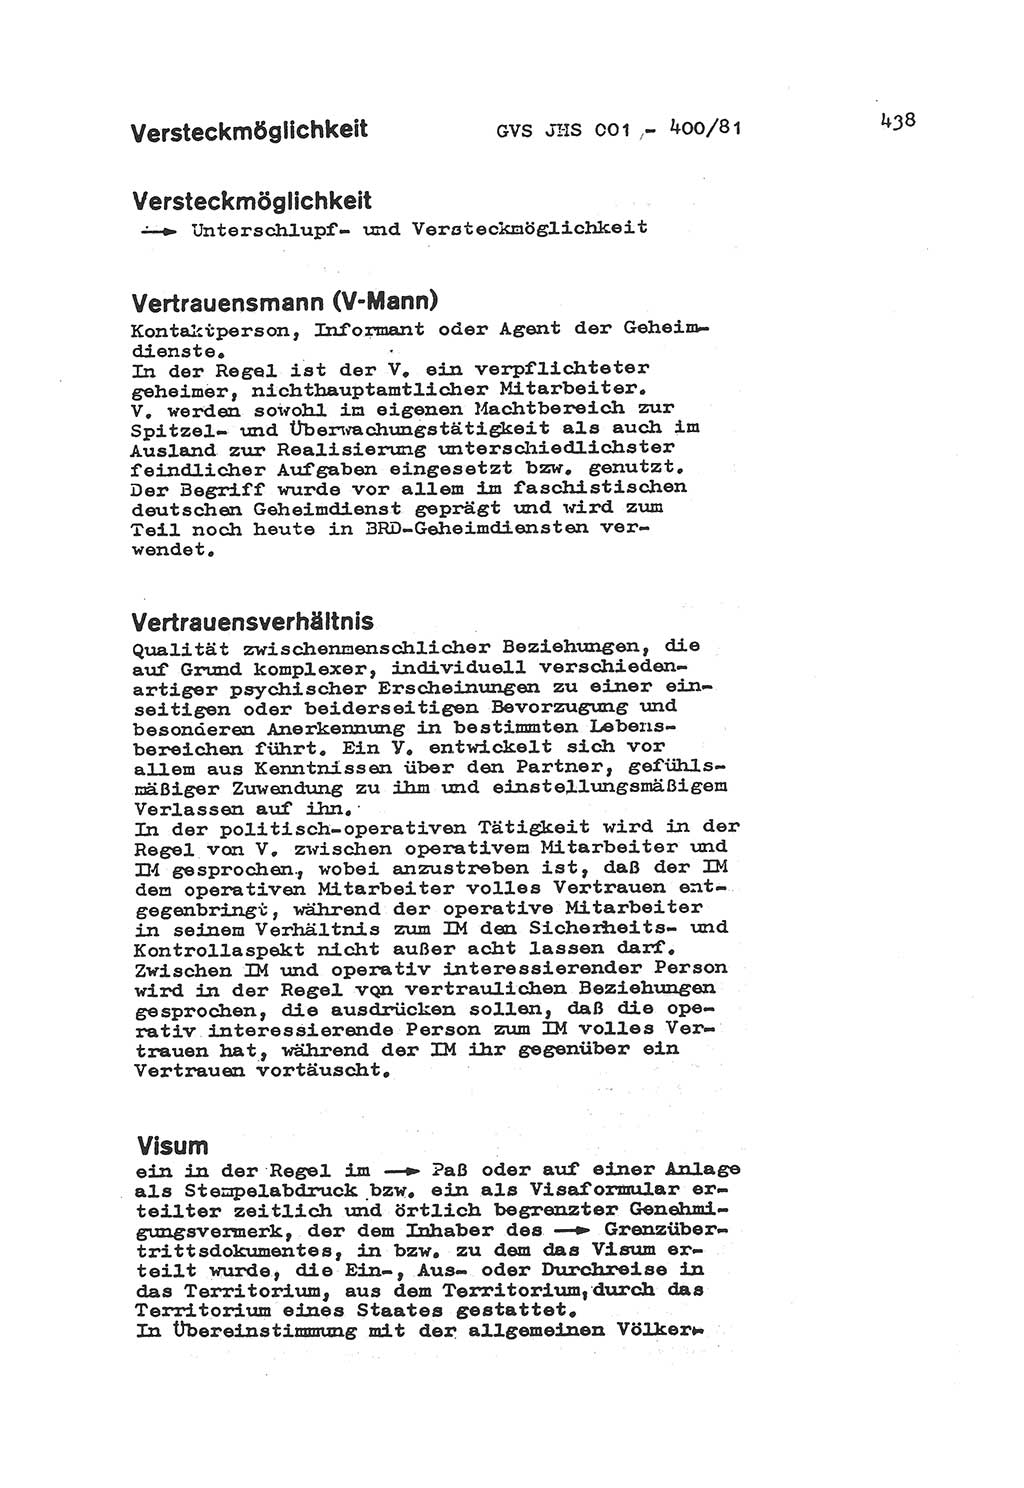 Wörterbuch der politisch-operativen Arbeit, Ministerium für Staatssicherheit (MfS) [Deutsche Demokratische Republik (DDR)], Juristische Hochschule (JHS), Geheime Verschlußsache (GVS) o001-400/81, Potsdam 1985, Blatt 438 (Wb. pol.-op. Arb. MfS DDR JHS GVS o001-400/81 1985, Bl. 438)